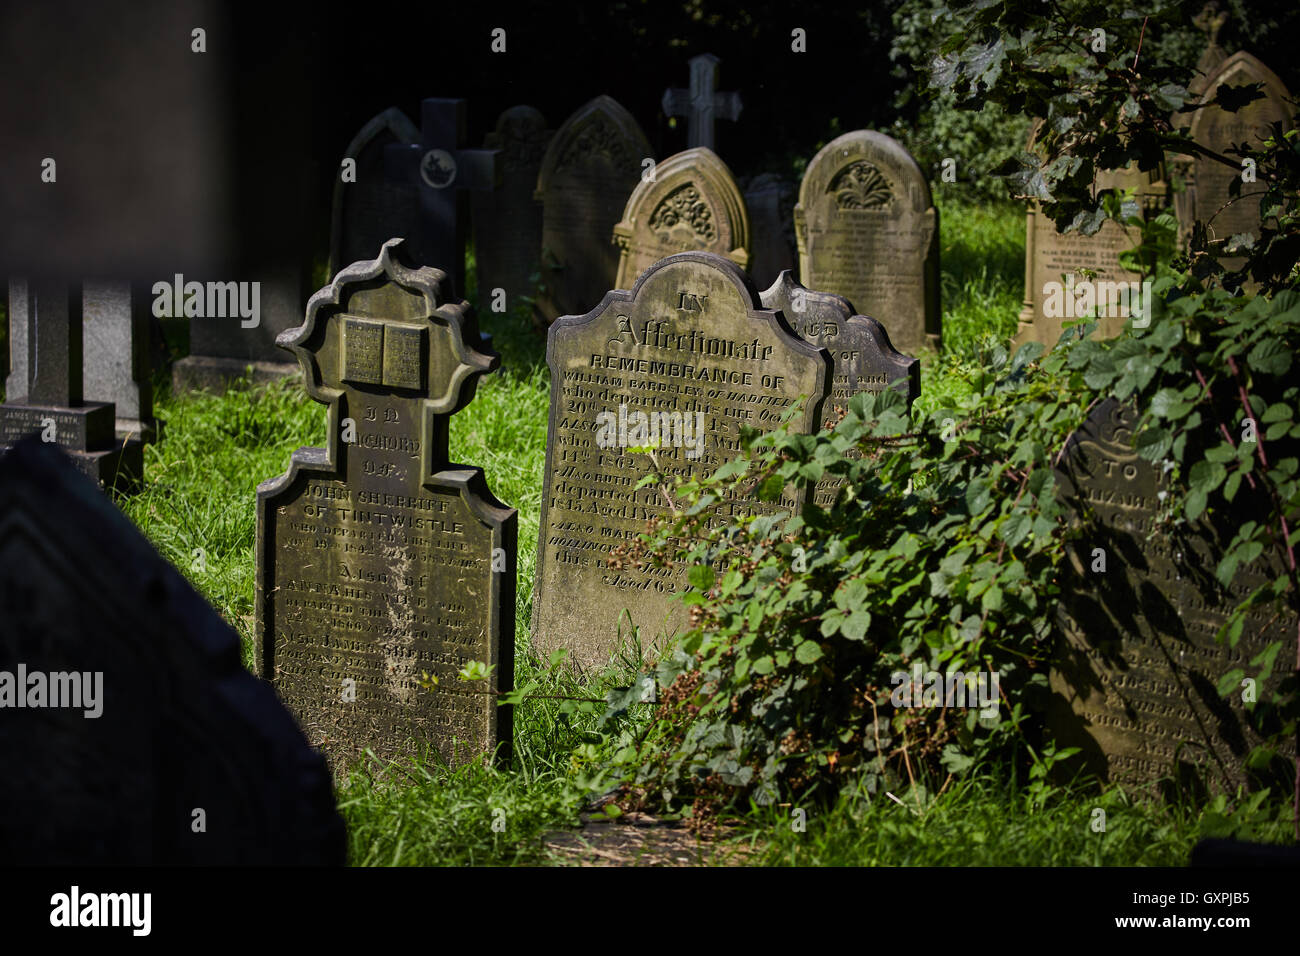 UK Friedhof Friedhof Gedenksteine Grab overdrove schlechten Wartung alte überdachte Unkraut bleibt Grabsteine verstorbenen Menschen b Stockfoto